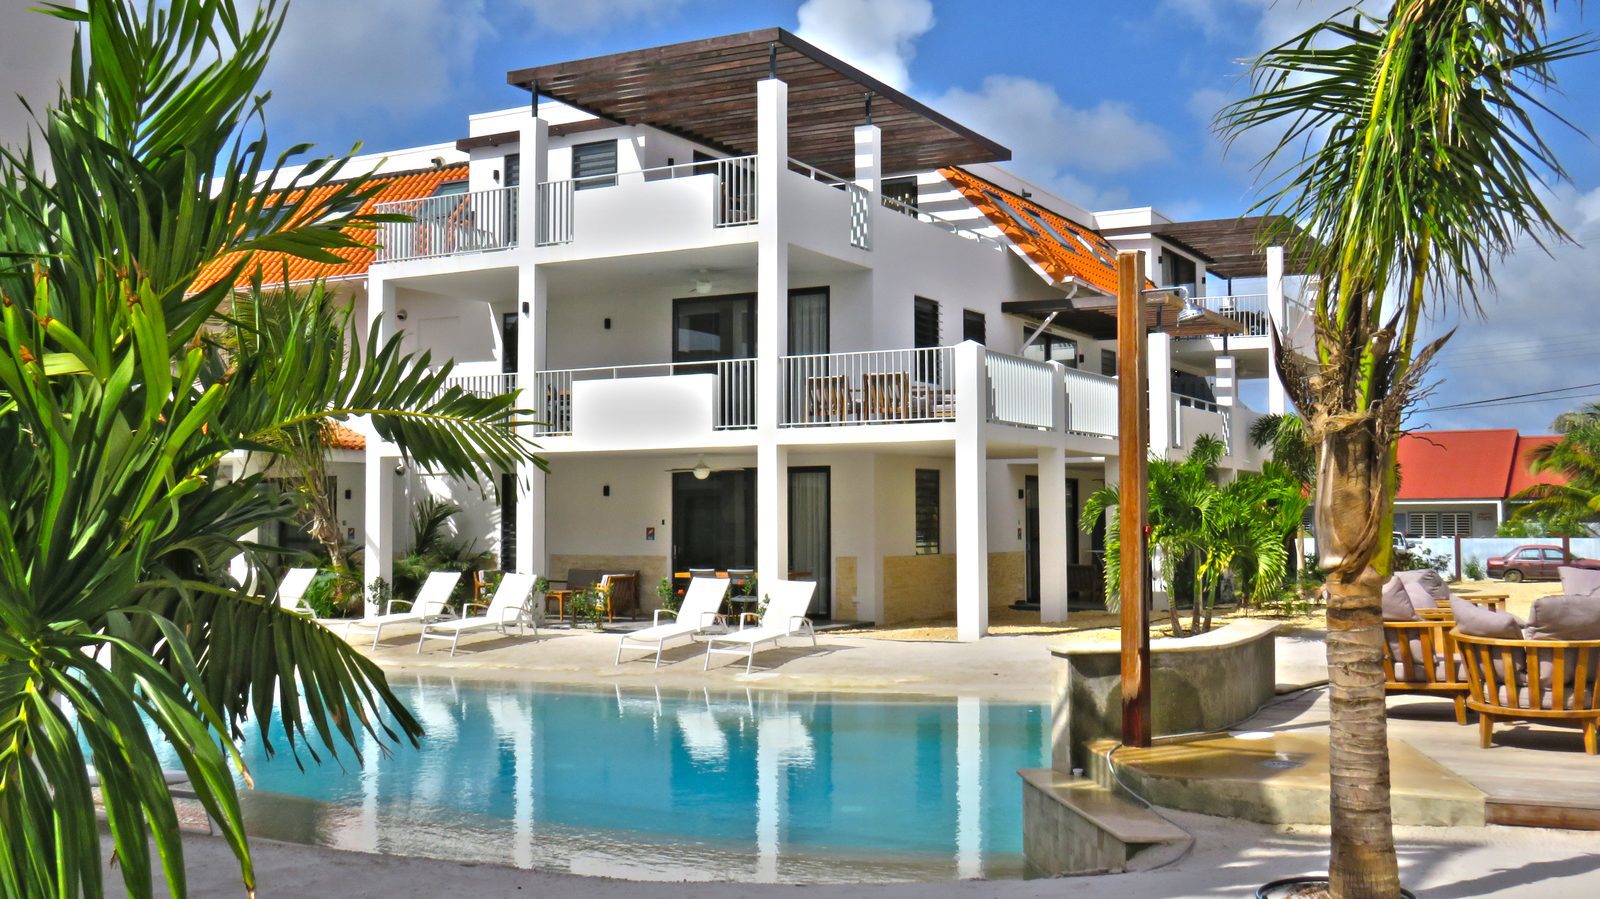 ¿Te alojas en Bonaire? ¡Eso es posible en Resort Bonaire! Tenemos varios apartamentos que son lujosos y tienen todo lo que necesitas.

